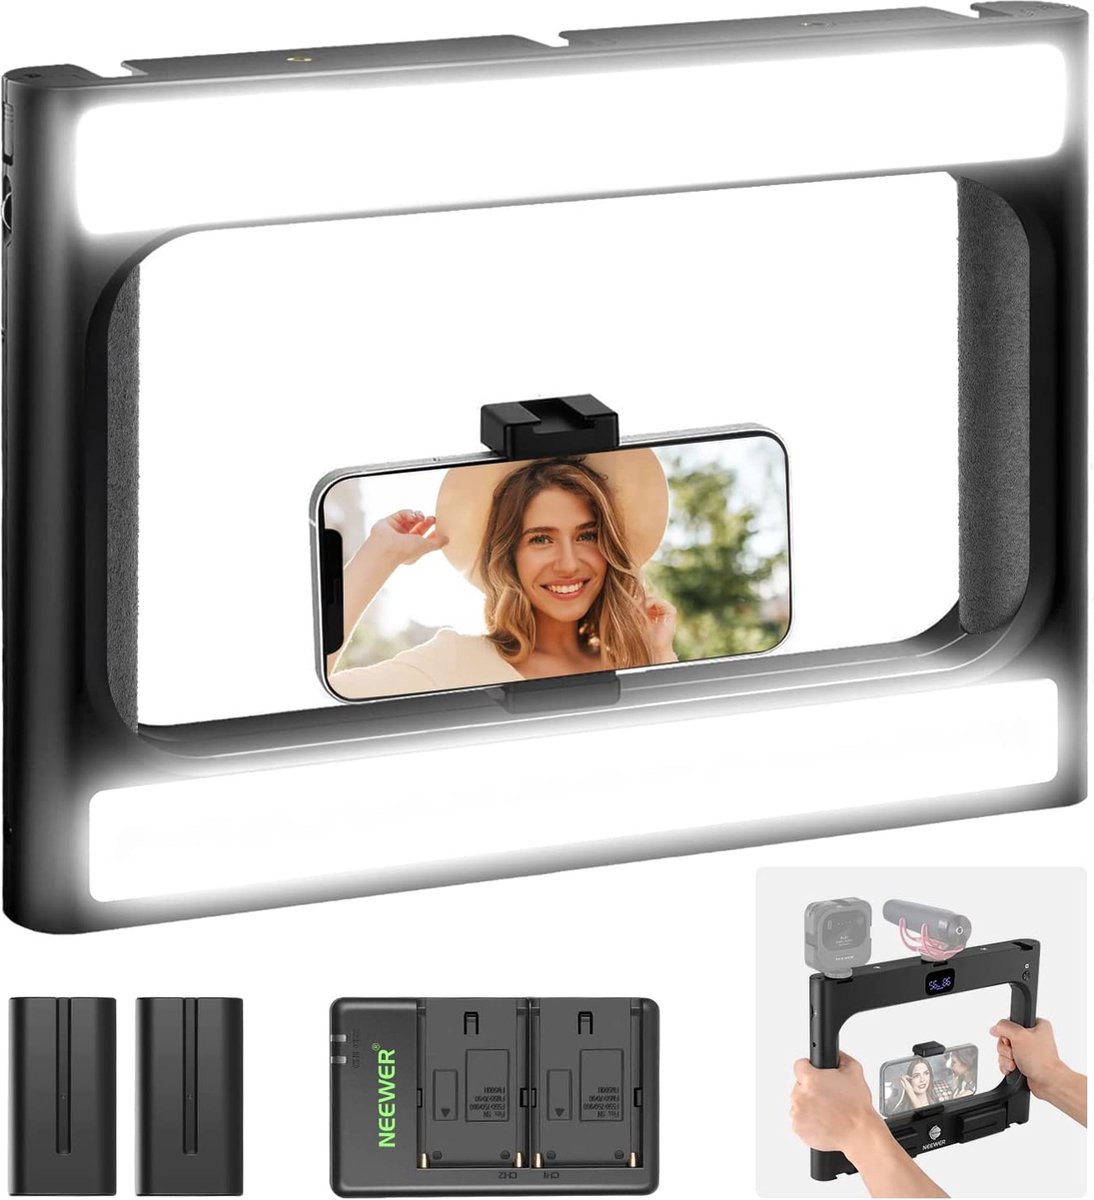 NEEWER - Smartphone - Video Rig - Met licht - Handphone Stabilizer - Met - Selfie Ring Light - Dimbaar - 3200K-5600K - CRI97+ LED - Videolamp - Voor - YouTube Video Recording/Make-up - Batterijen en oplader (meegeleverd)